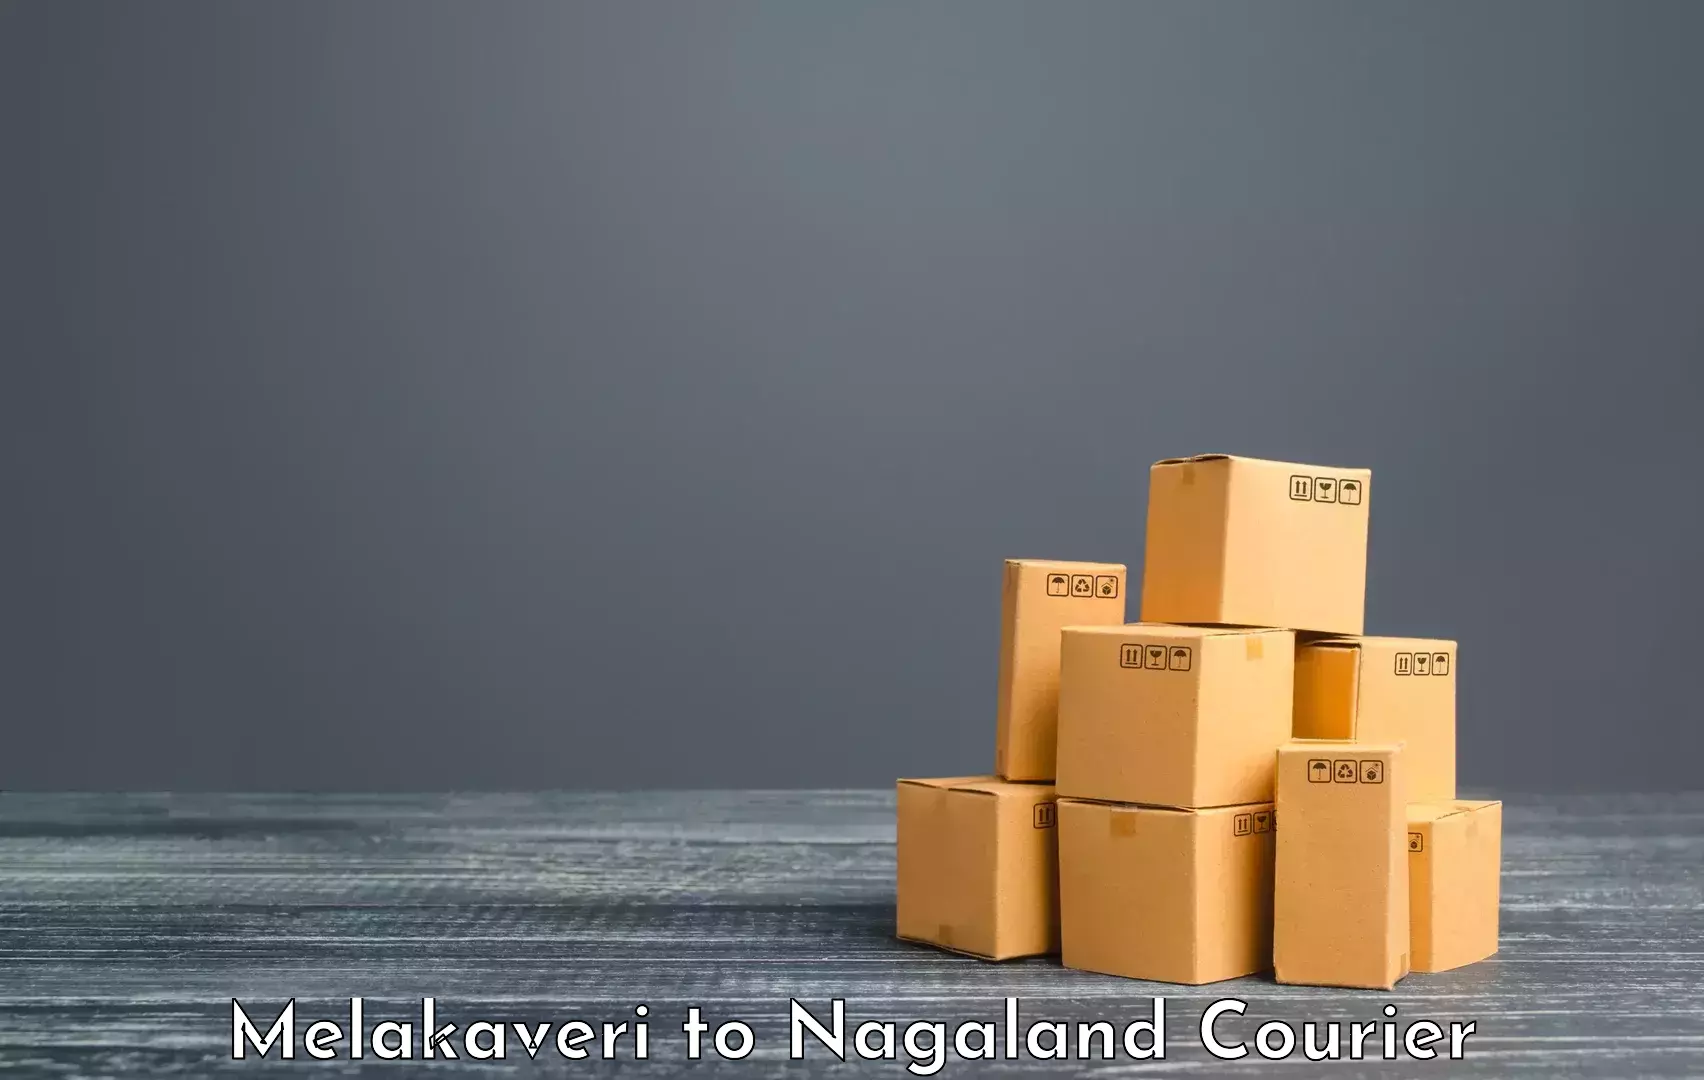 Luggage shipment specialists Melakaveri to NIT Nagaland